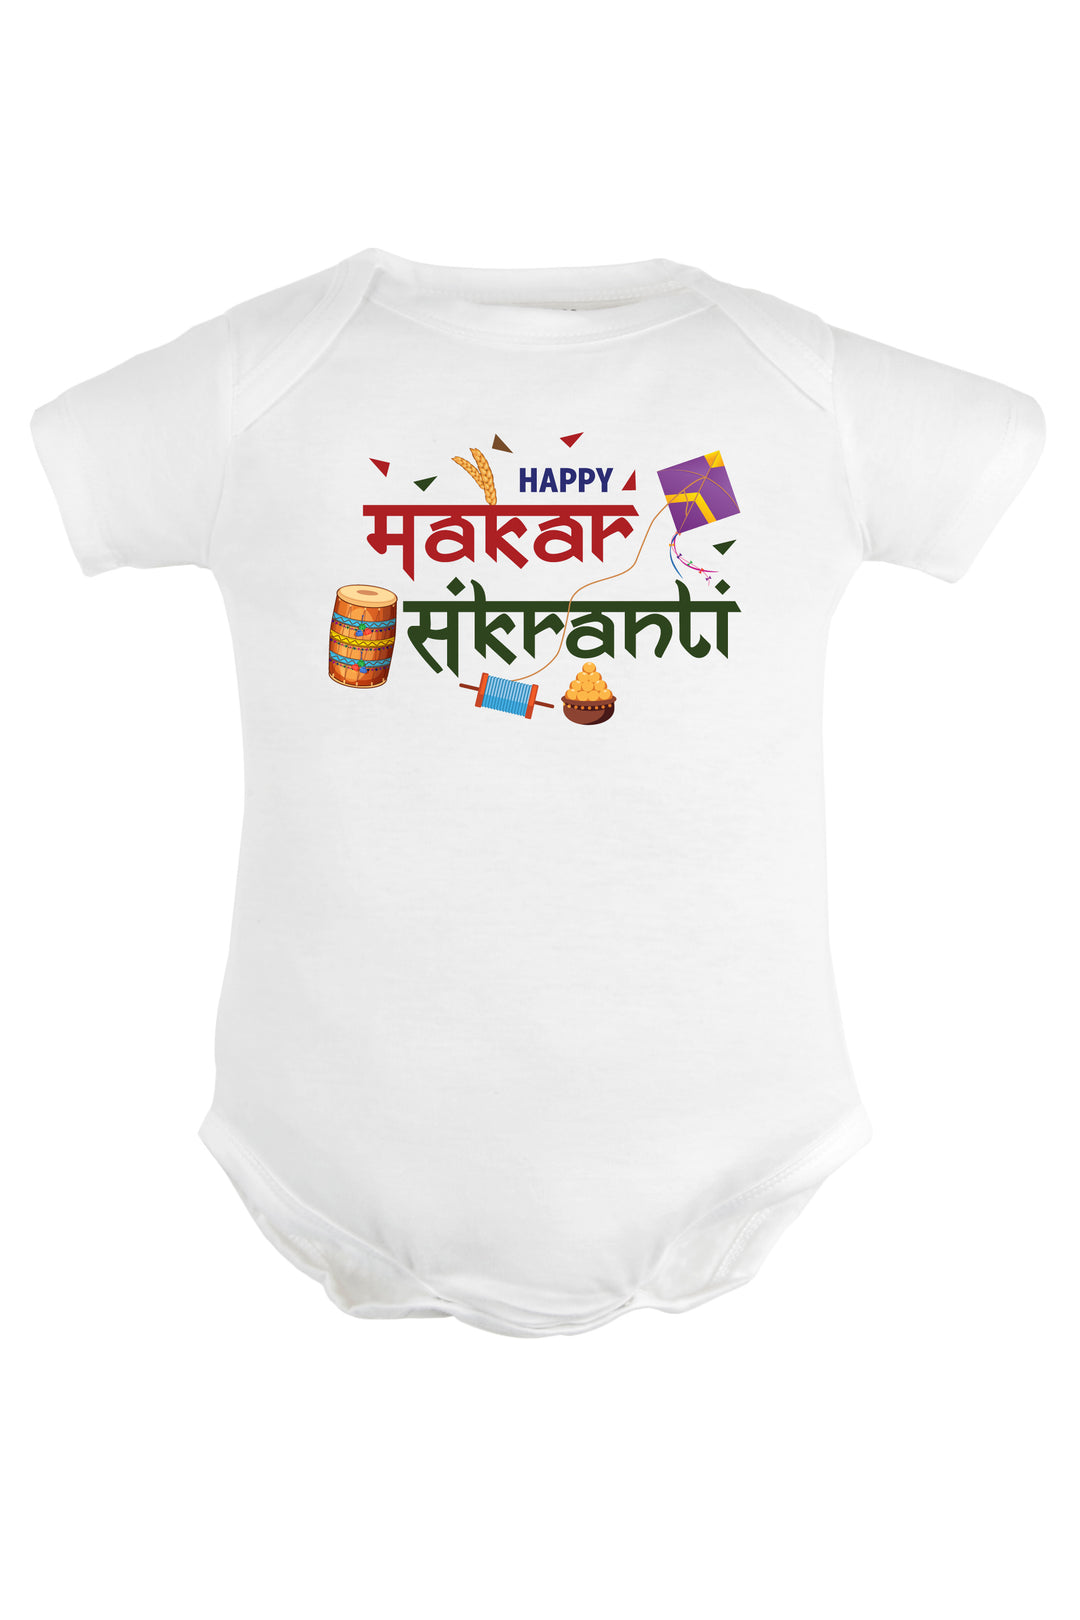 Happy Makar Sankranti Baby Romper | Onesies